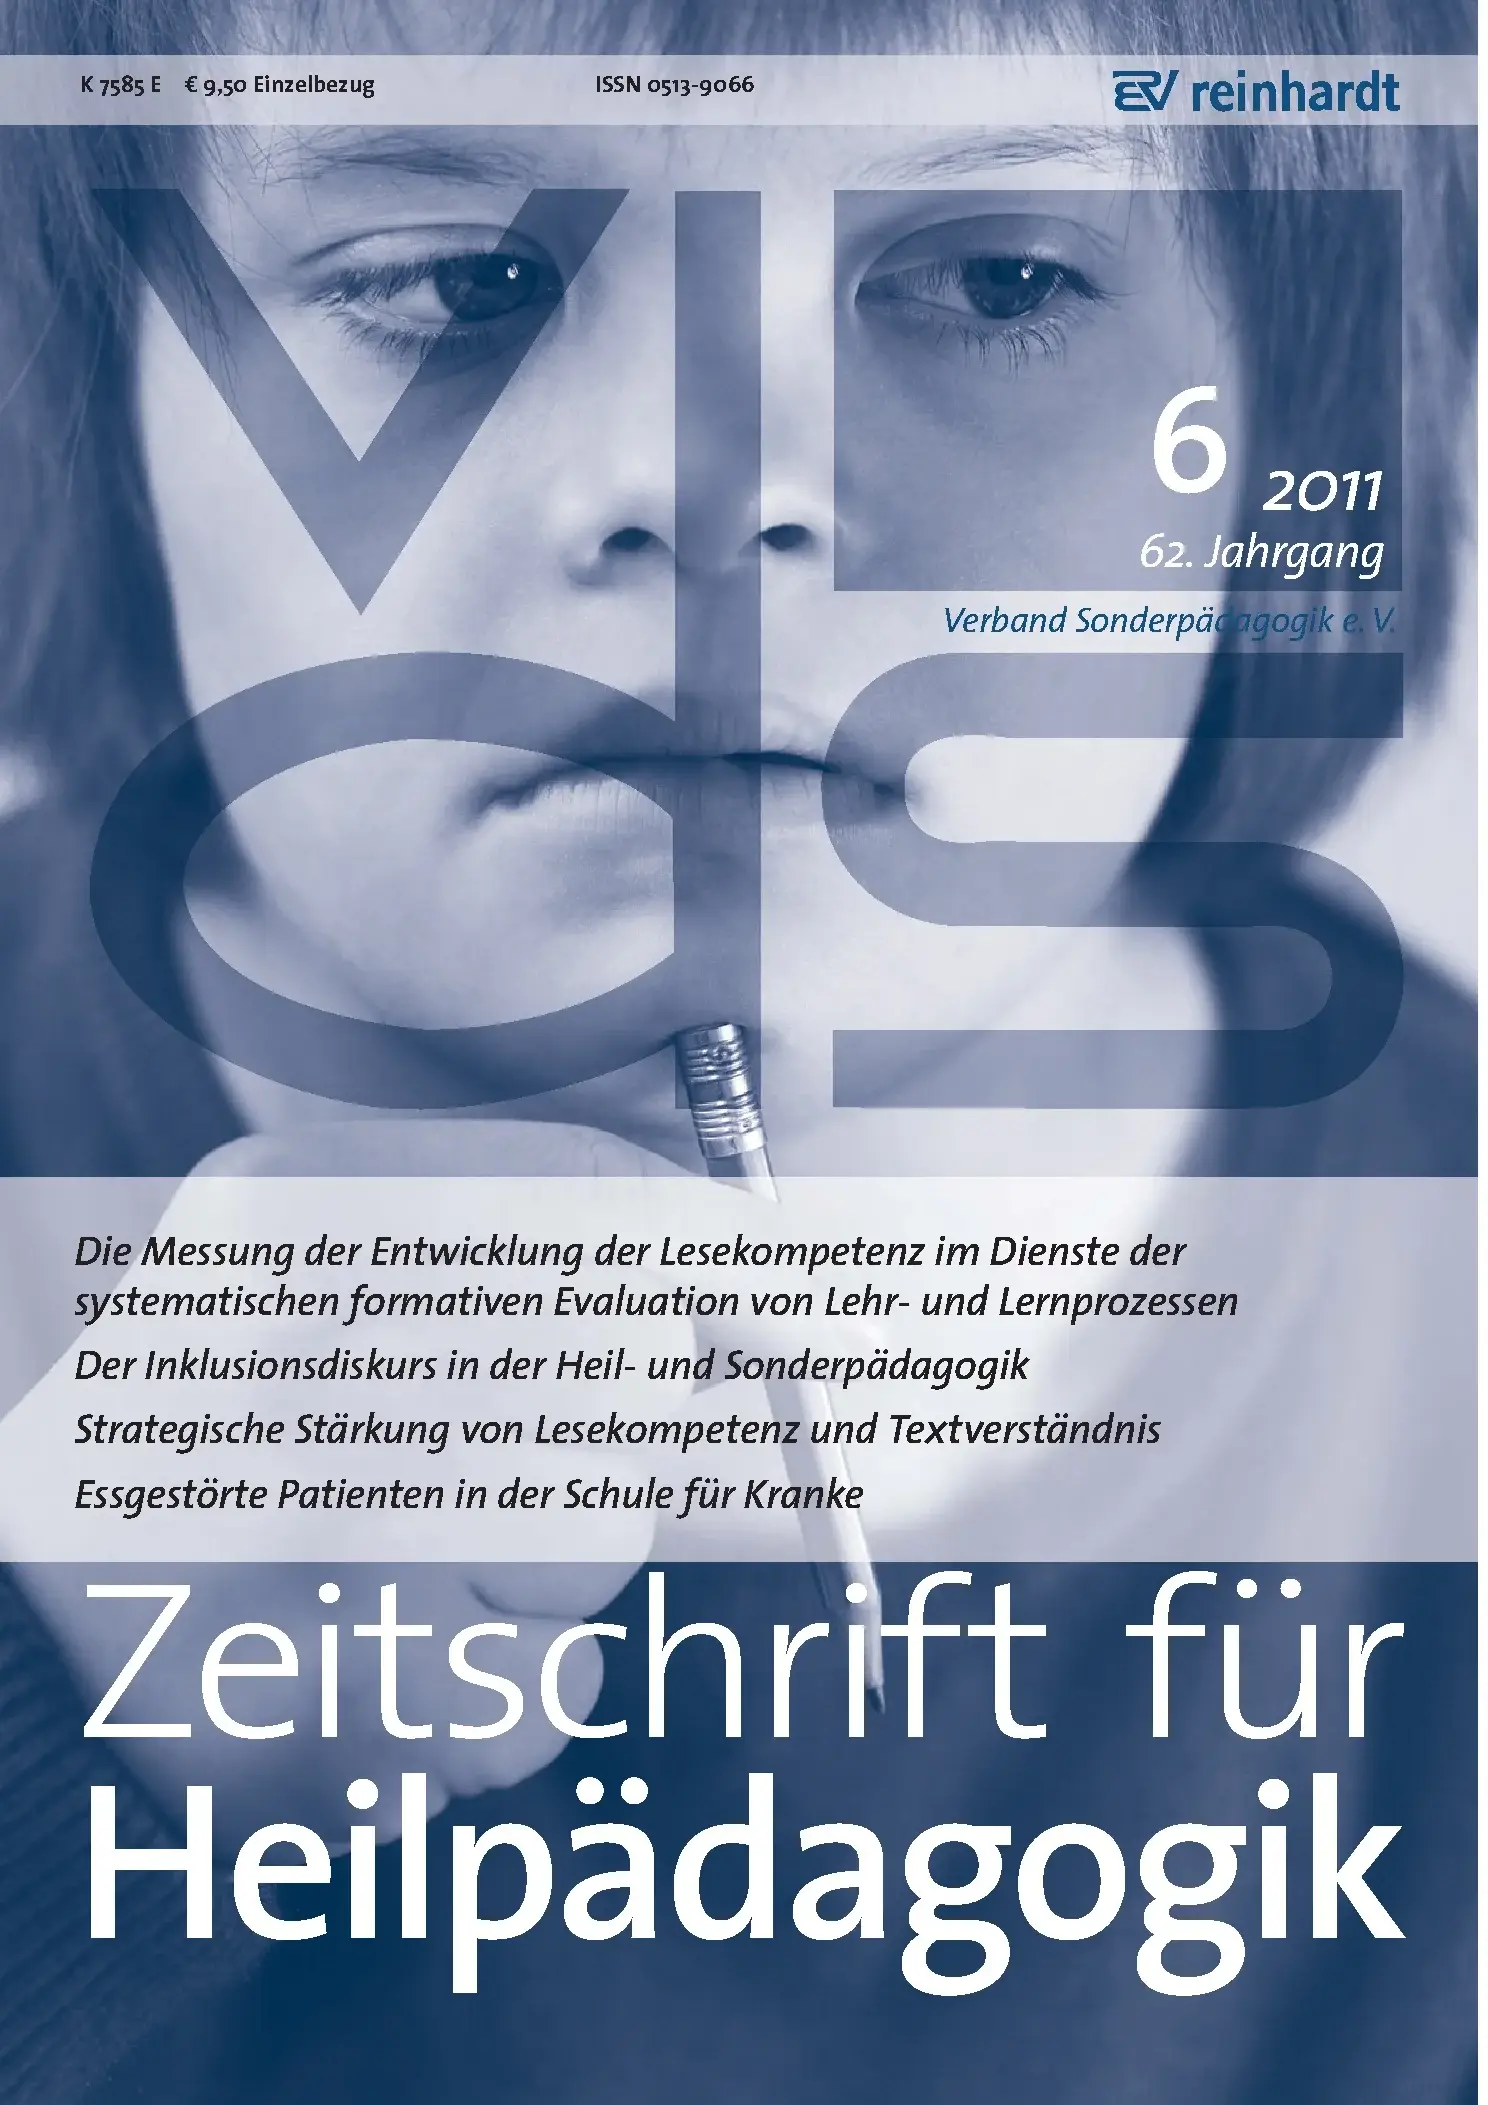 Zeitschrift für Heilpädagogik Cover 06.2011